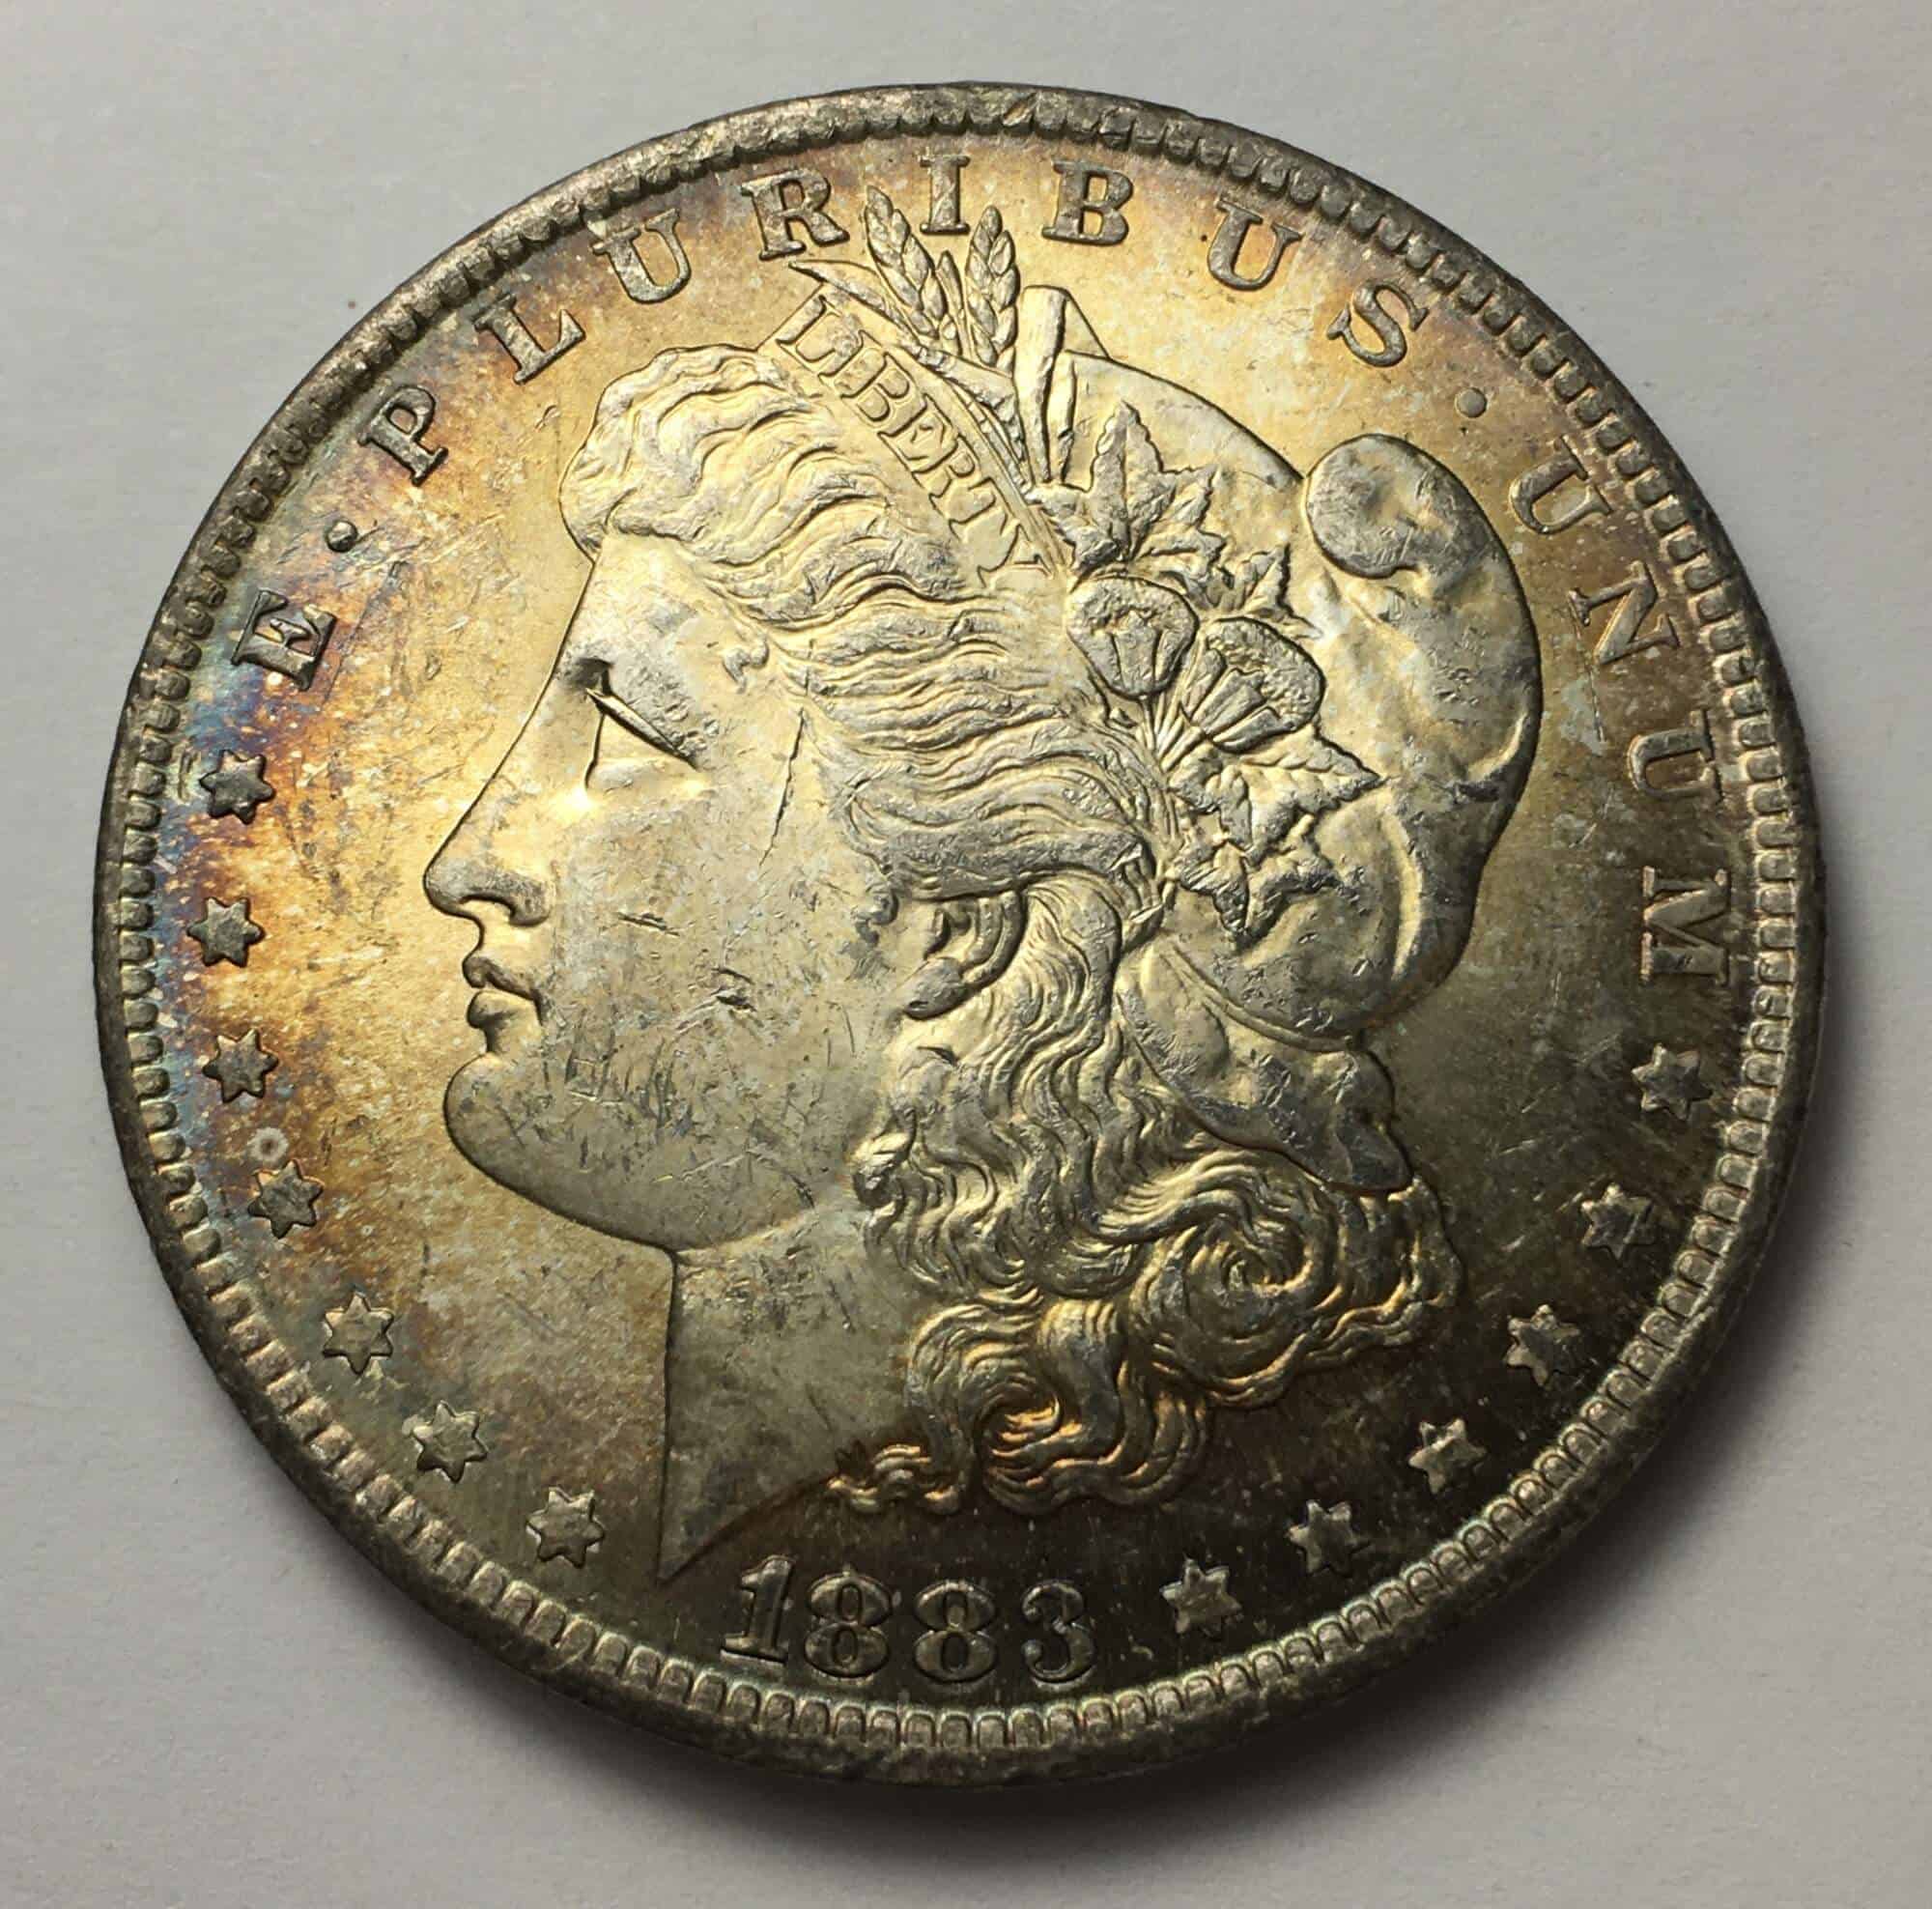 1883 Silver Dollar Value